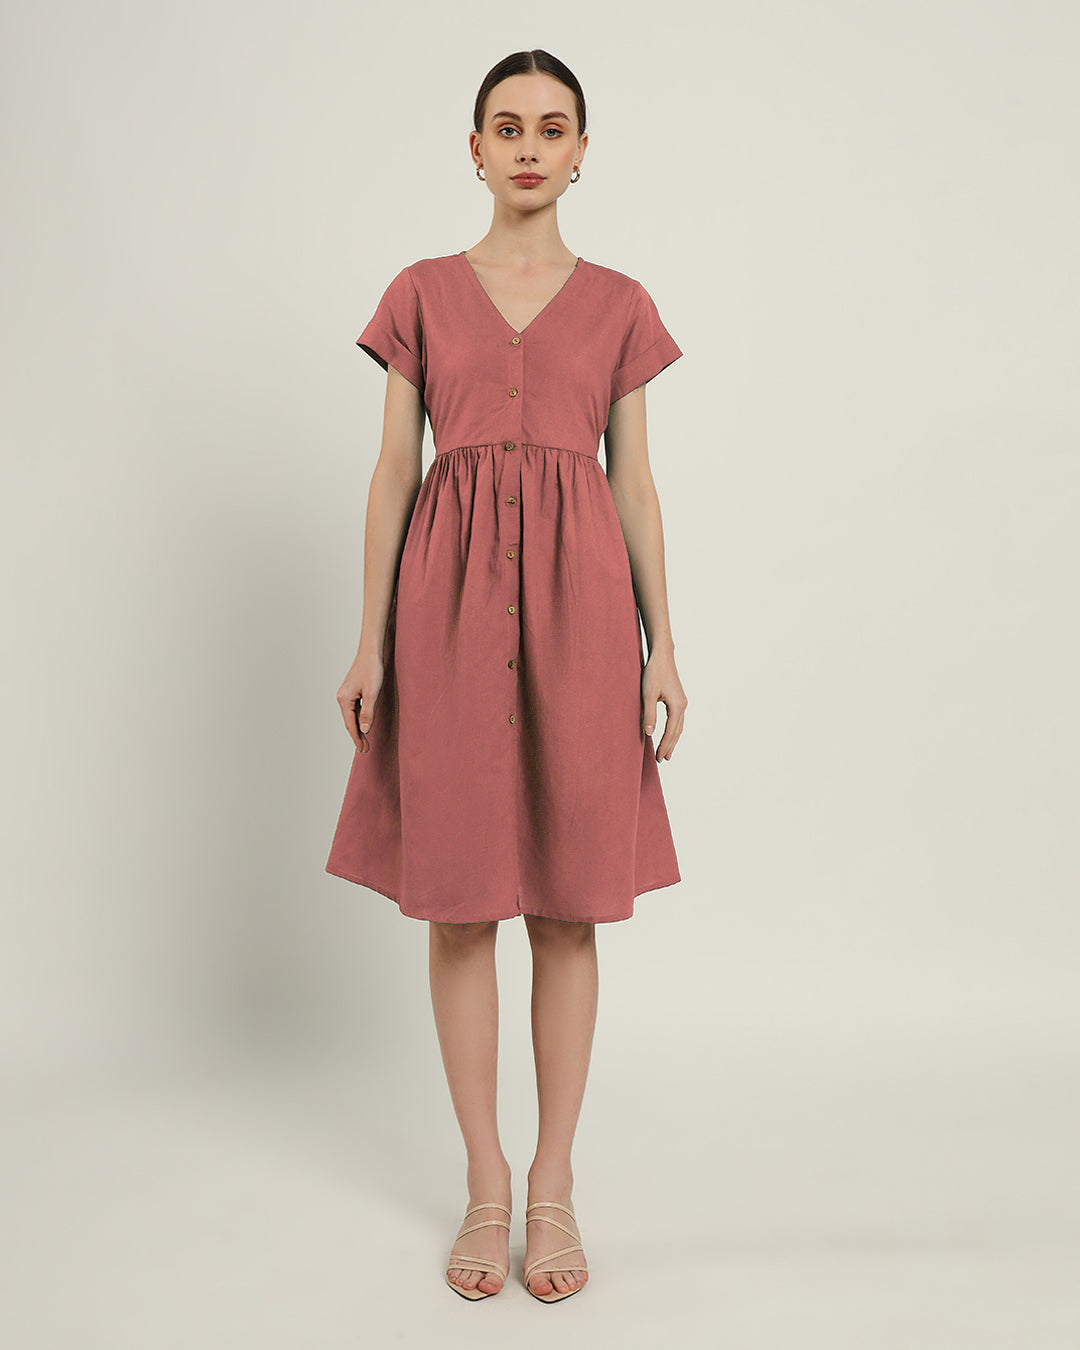 The Valence Ivory Pink Dress